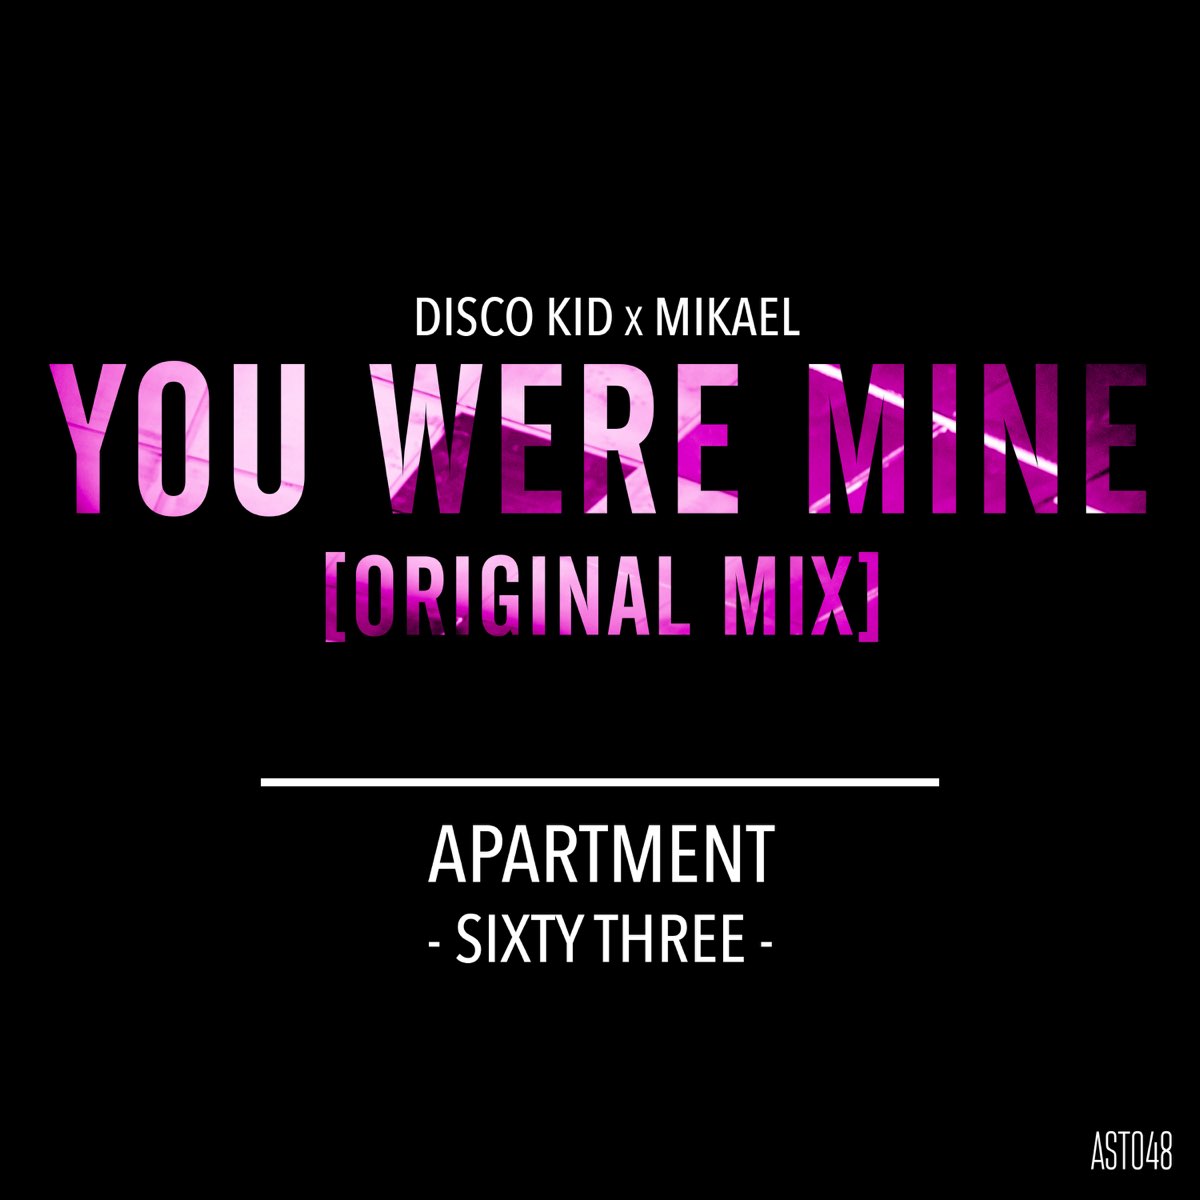 Be mine original mix